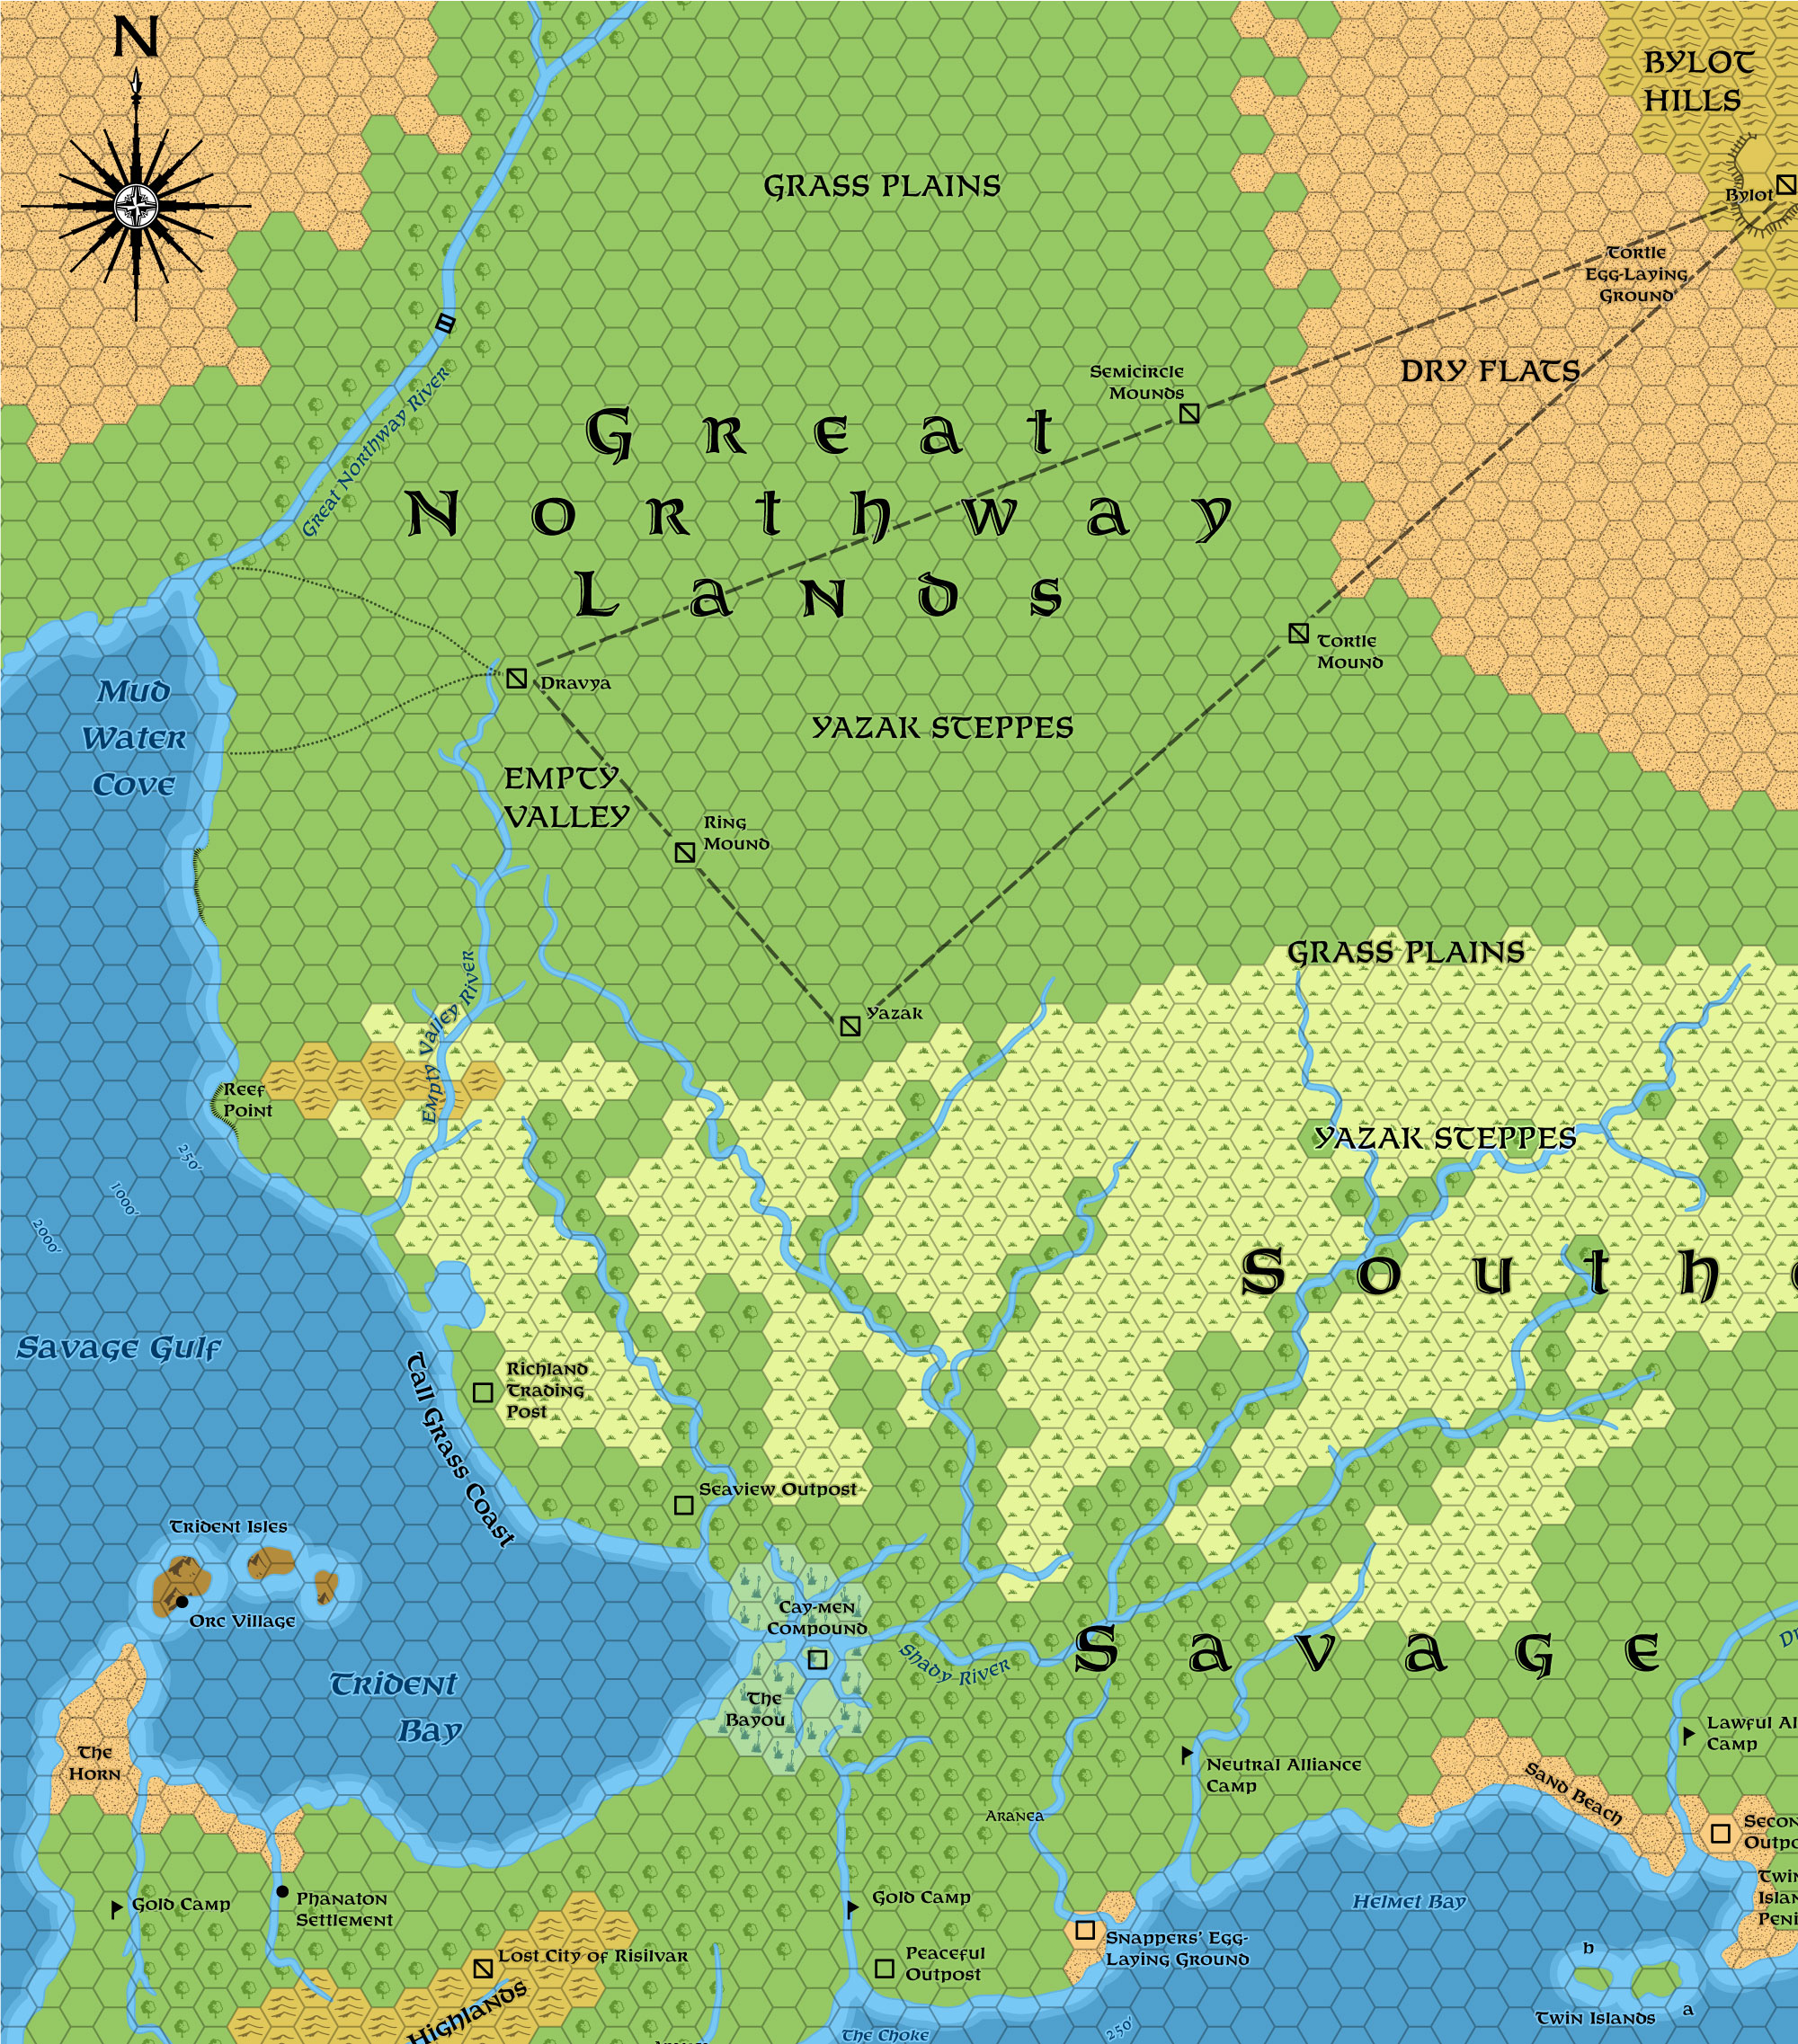 Great Northway Lands, 22.9 miles per hex (1987)